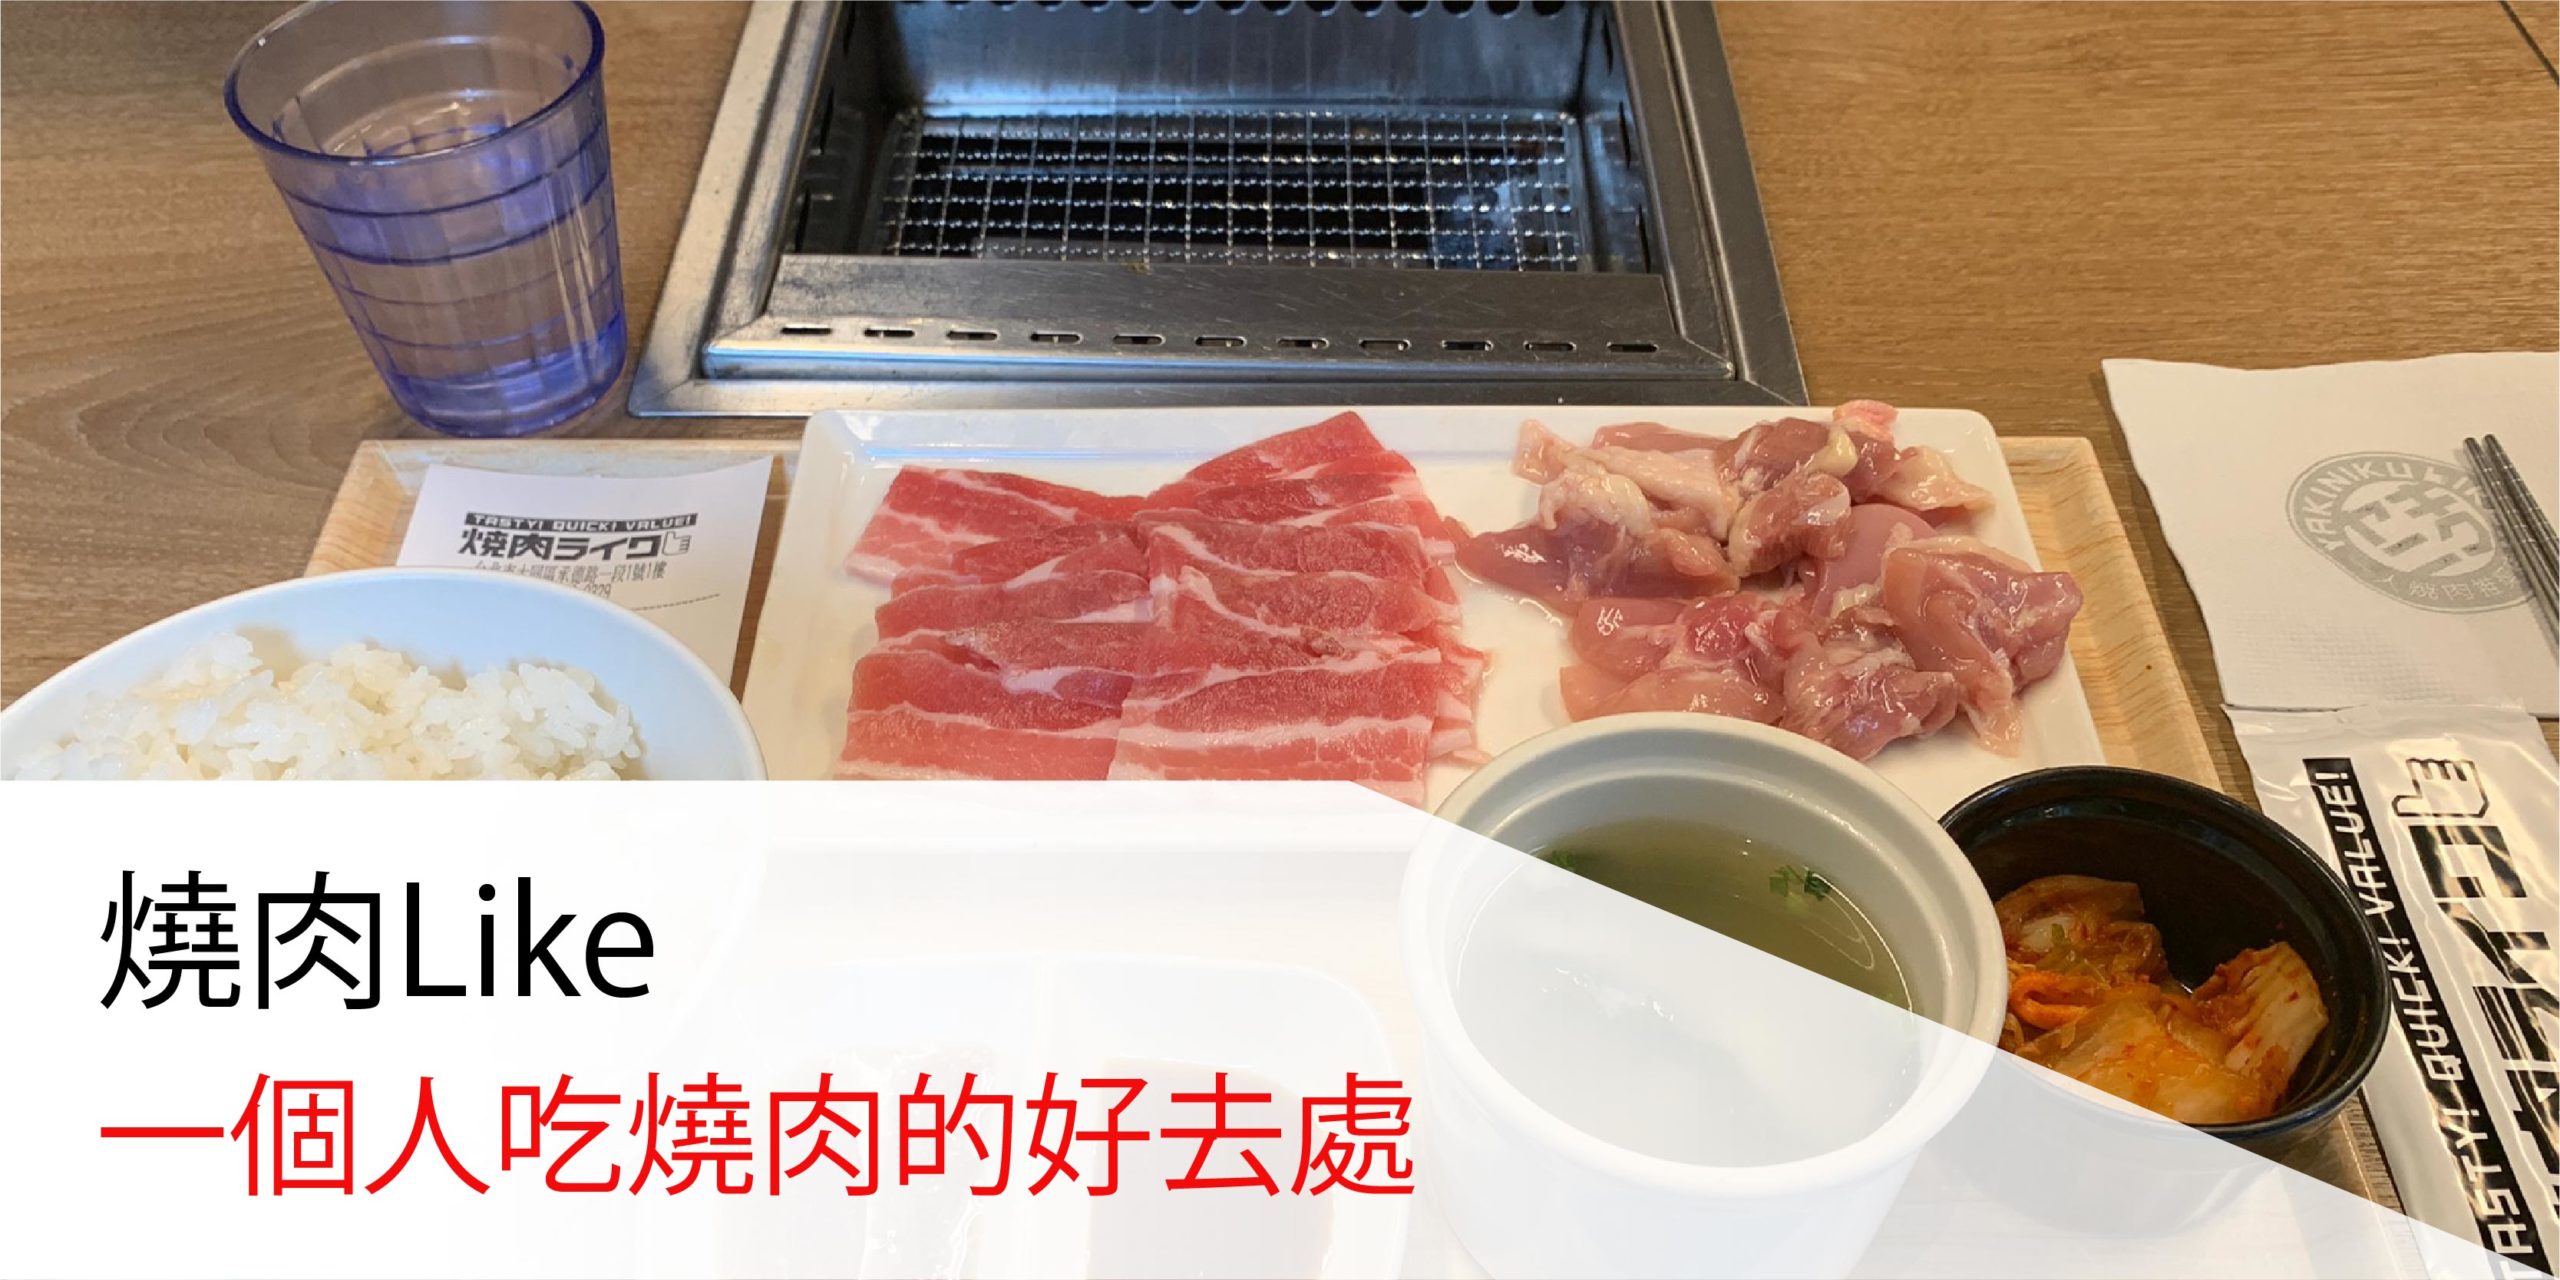 台北美食-燒肉Like 一個人吃燒肉的好去處